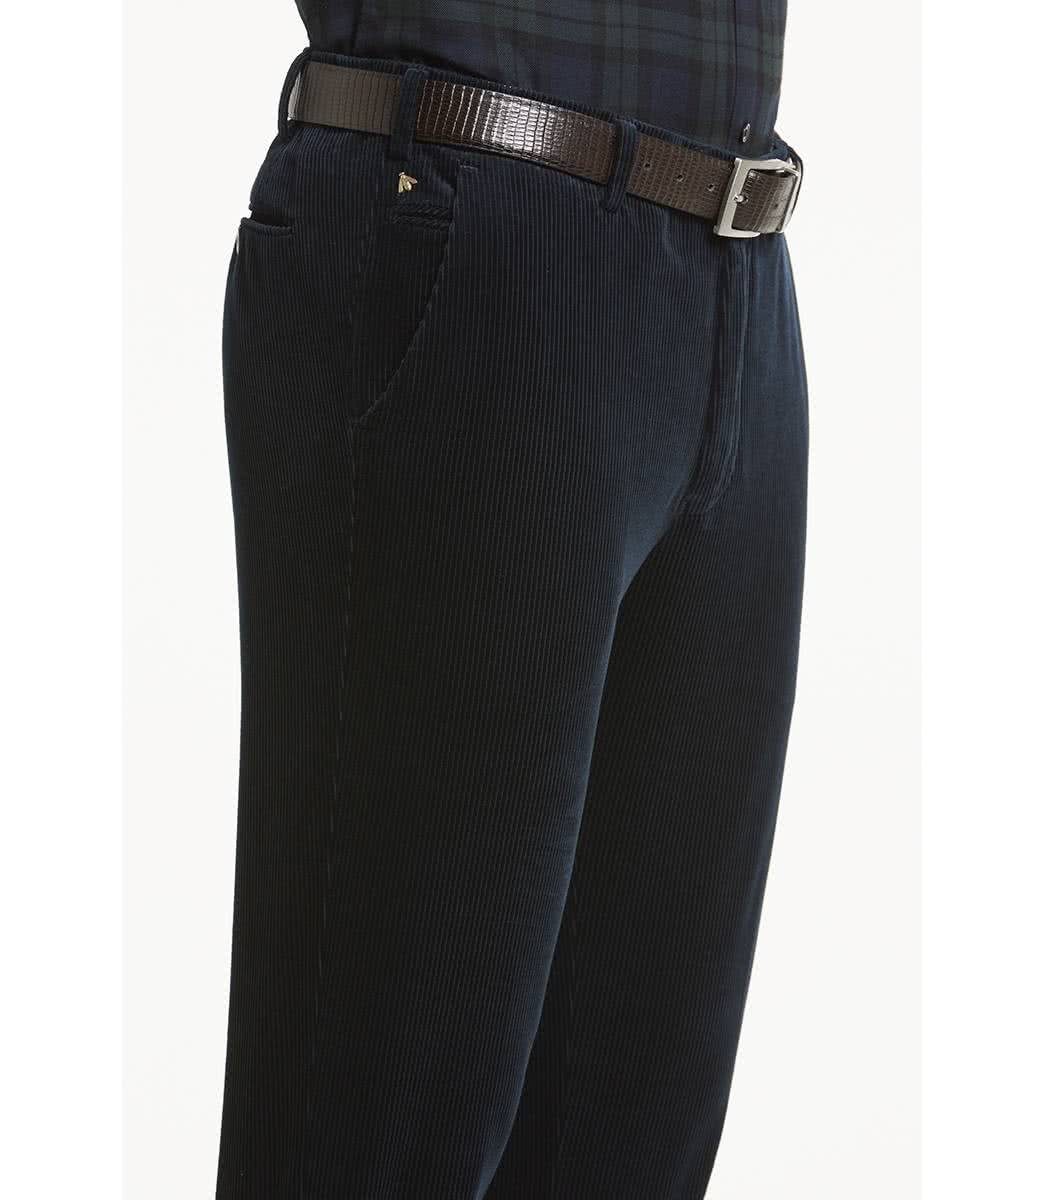 Herren Jeans MEYER 5-Pocket-Jeans MEYER EXCLUSIVE BONN dark marine 2-8549-19 - PREMI